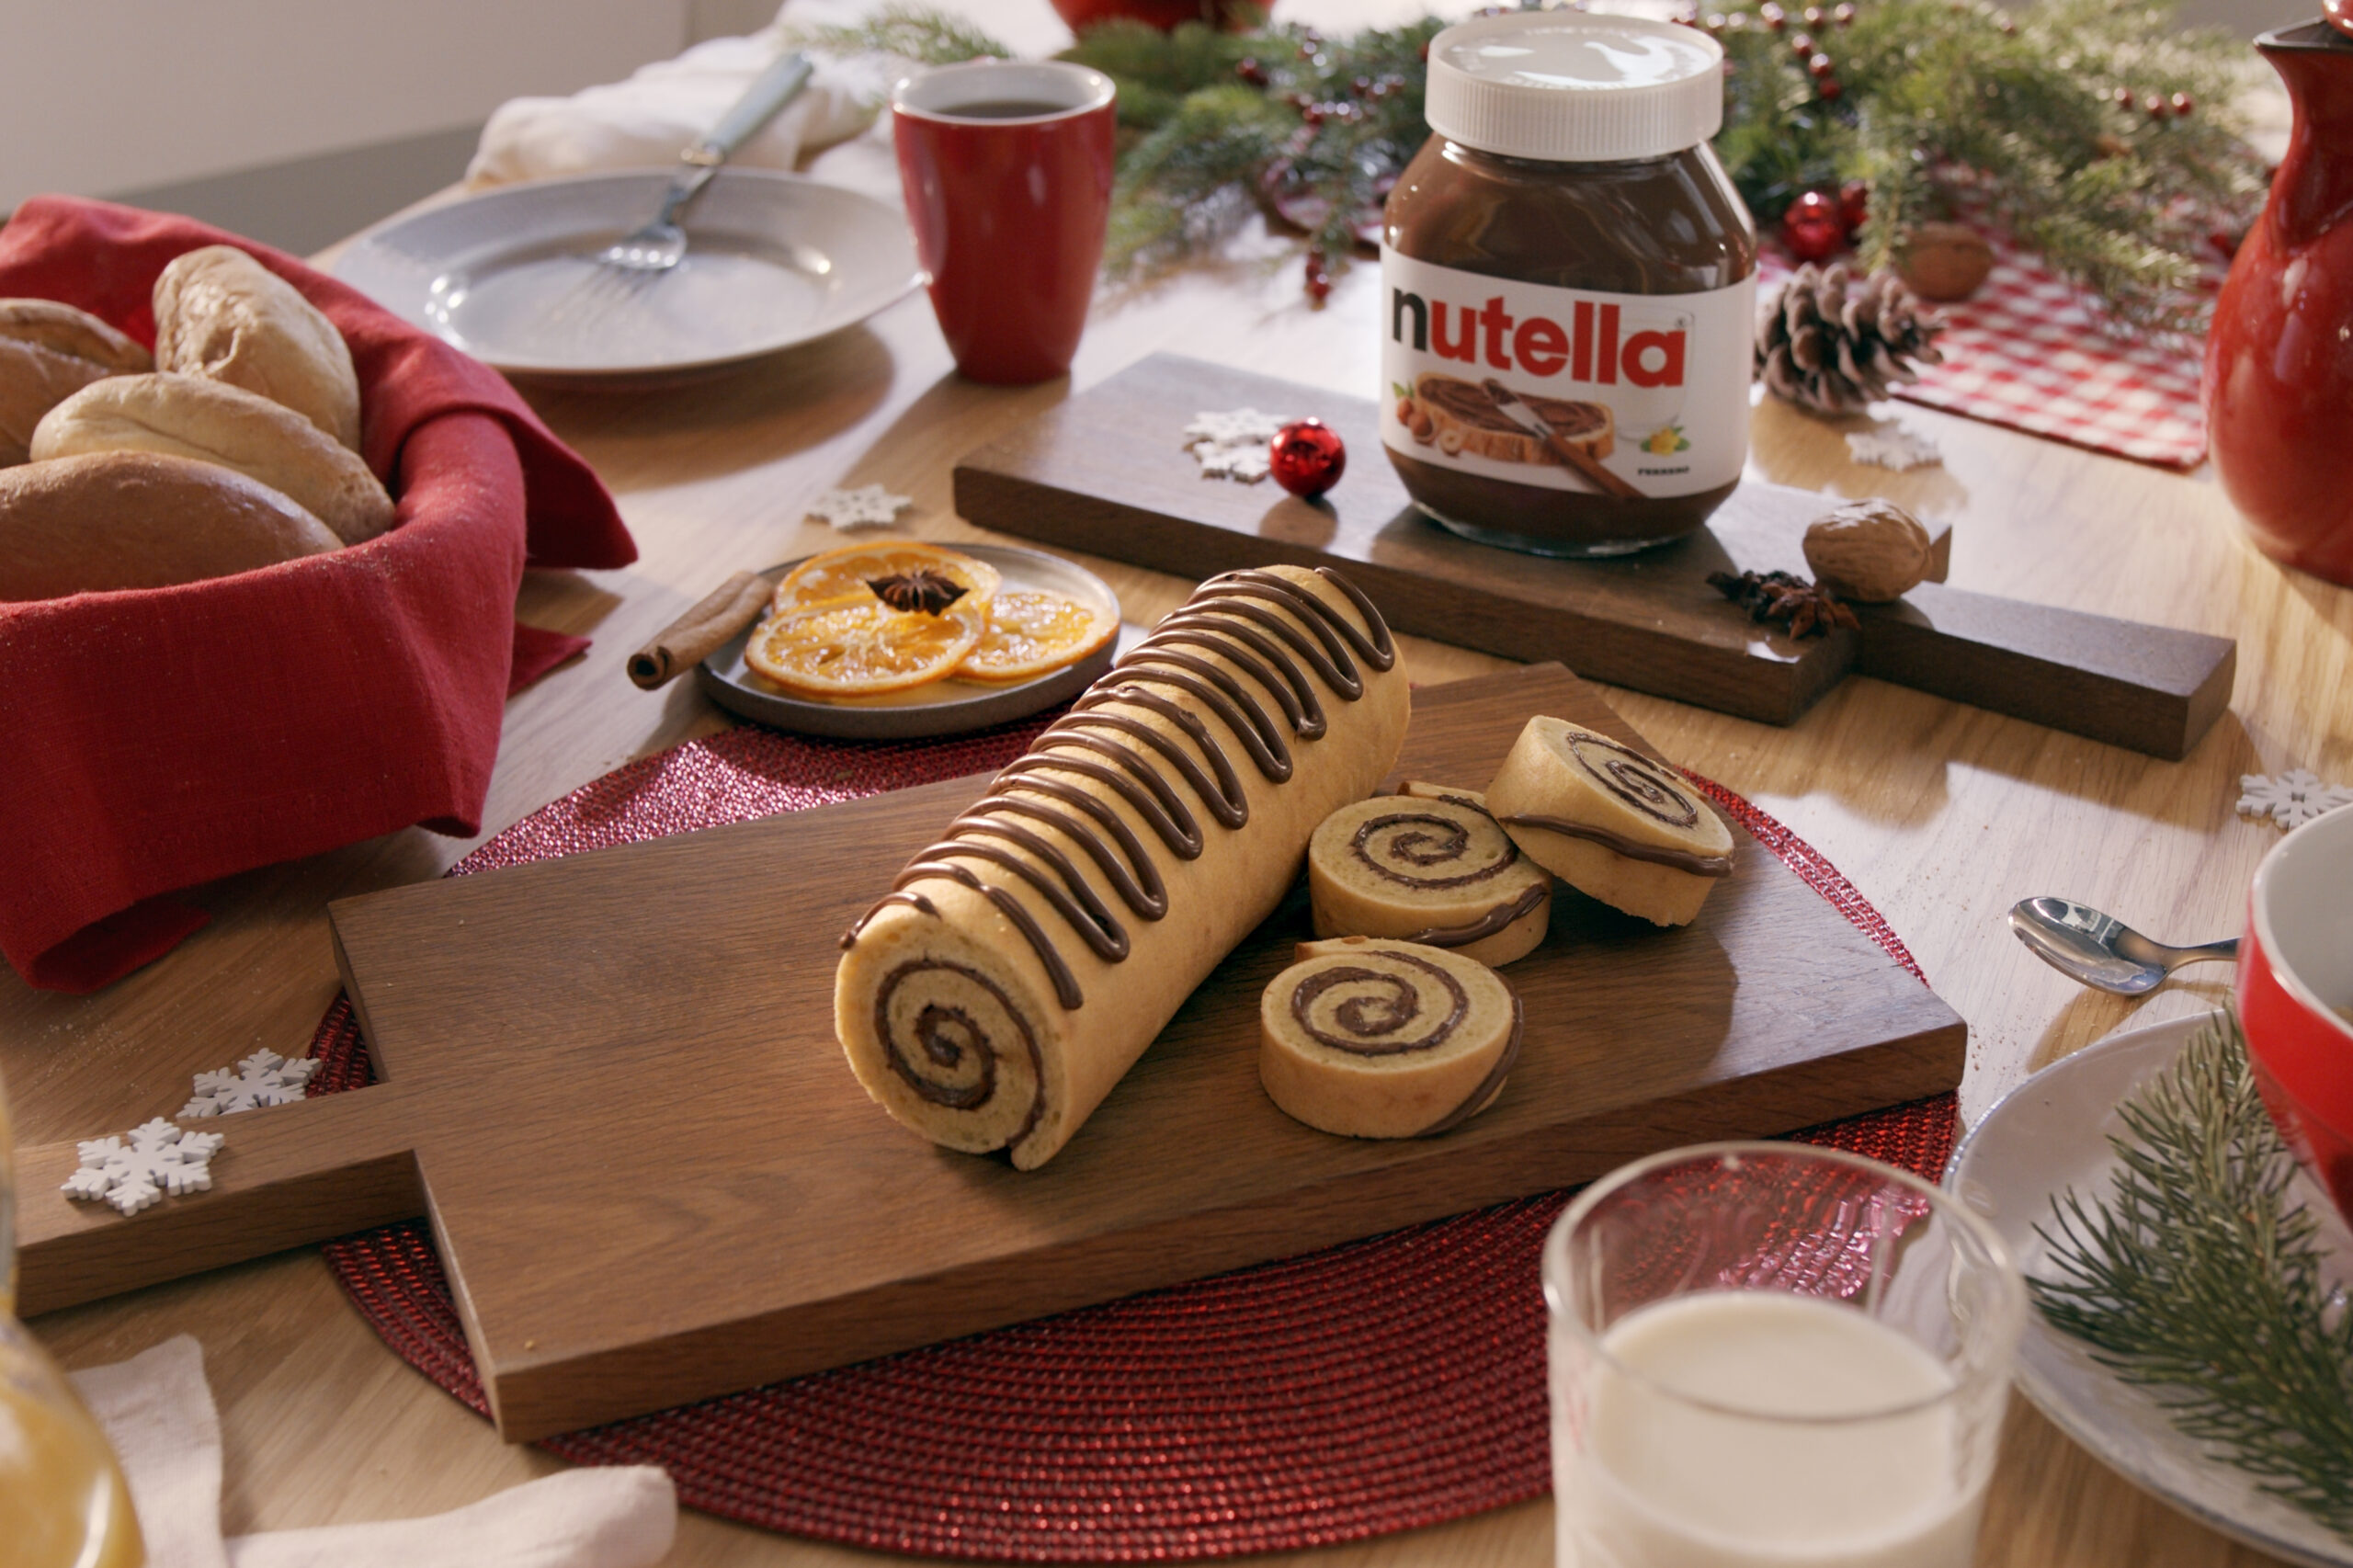 Os fãs podem participar do Dia Mundial da Nutella criando receitas e compartilhando nas redes sociais/Créditos: Divulgação